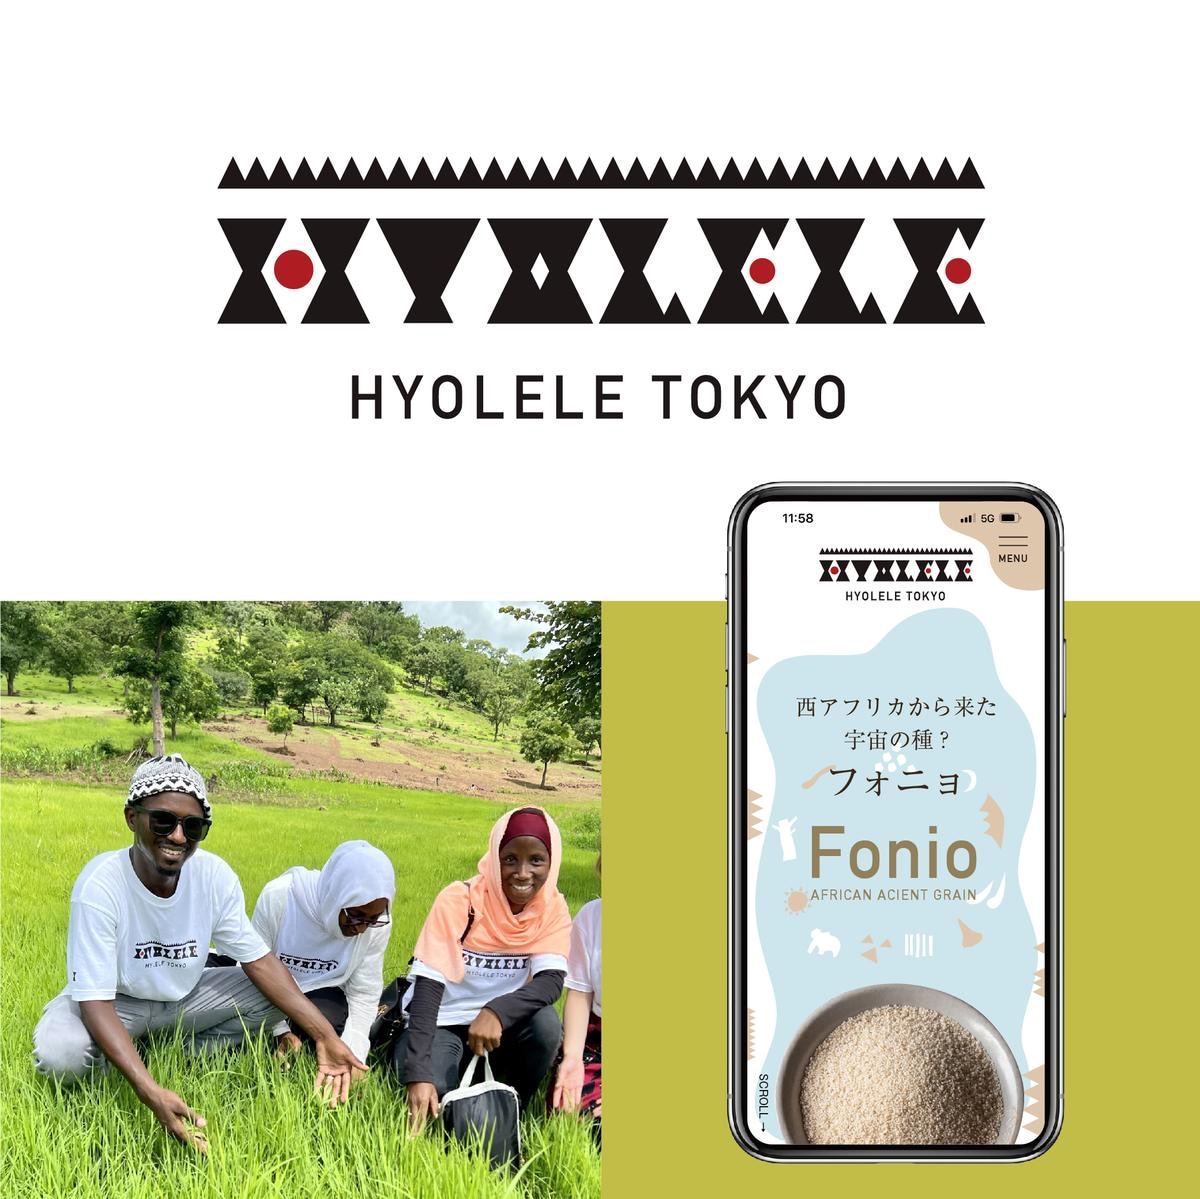 アフリカ穀物ブランド「イオレレ・トーキョー」ブランディング